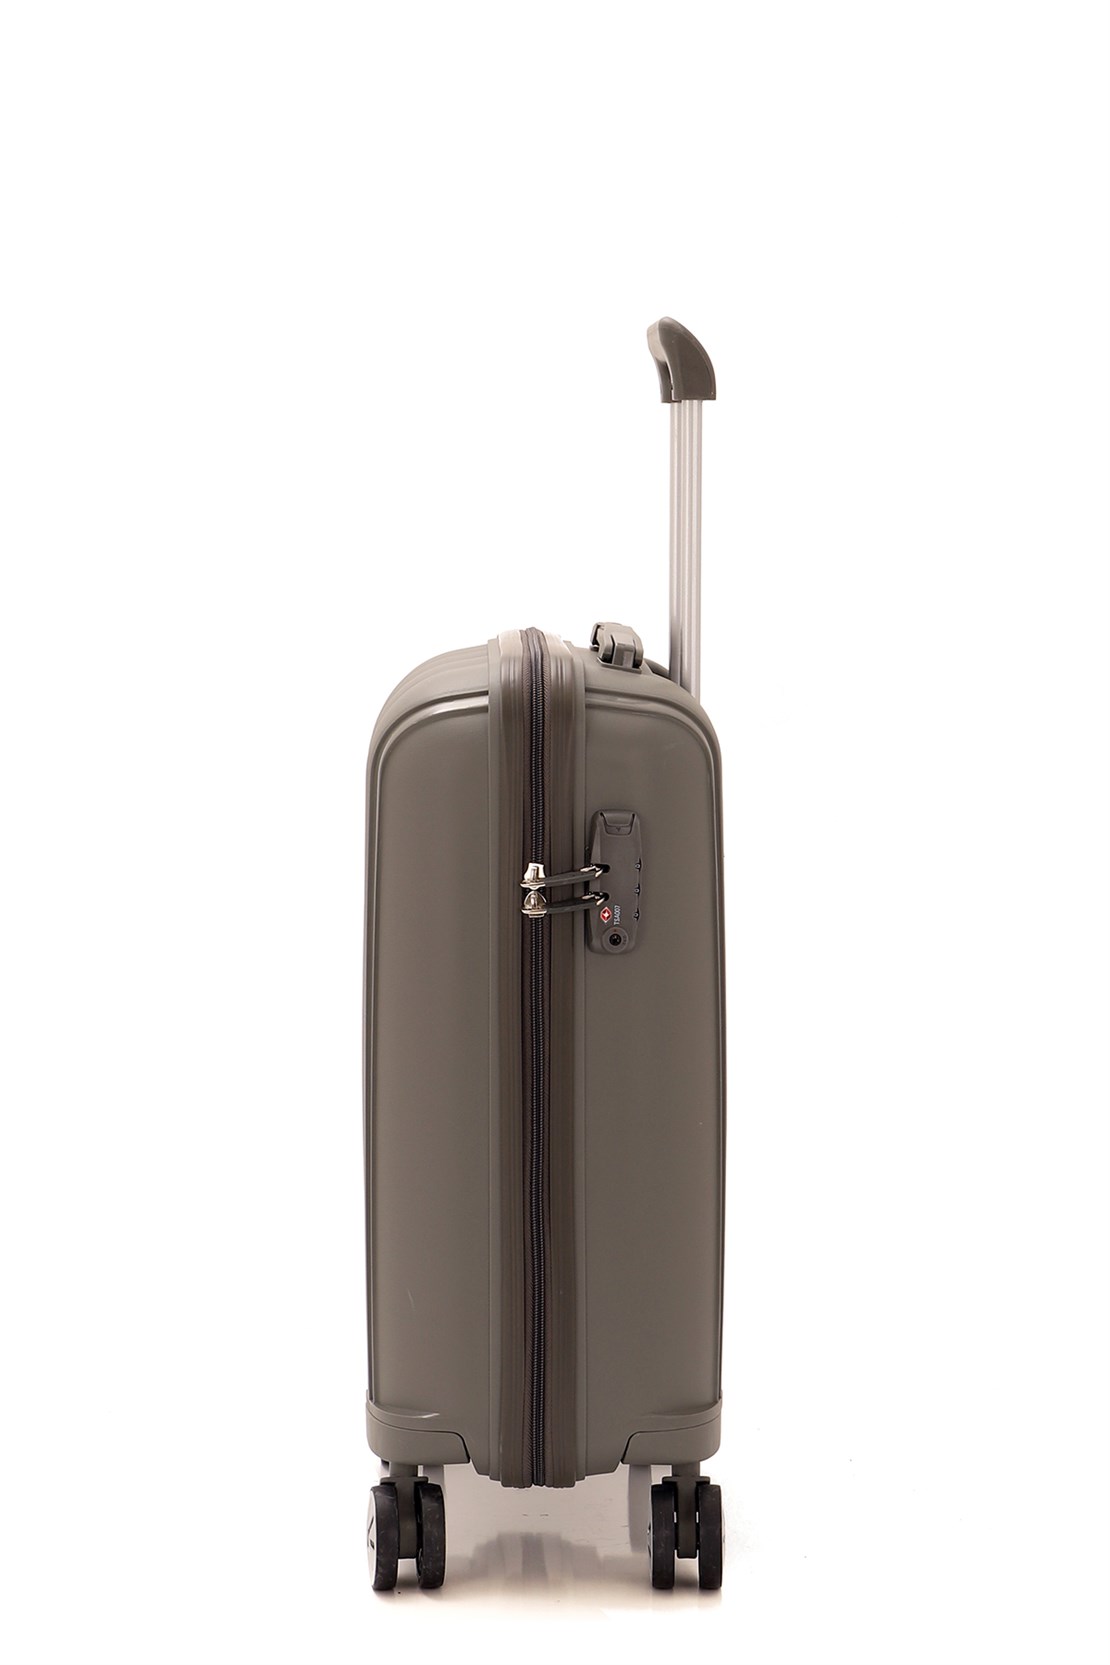 Маленький чемодан для ручьной клади из полипропилена MCS V305 S GREY! Для 8-10 кг! - 2